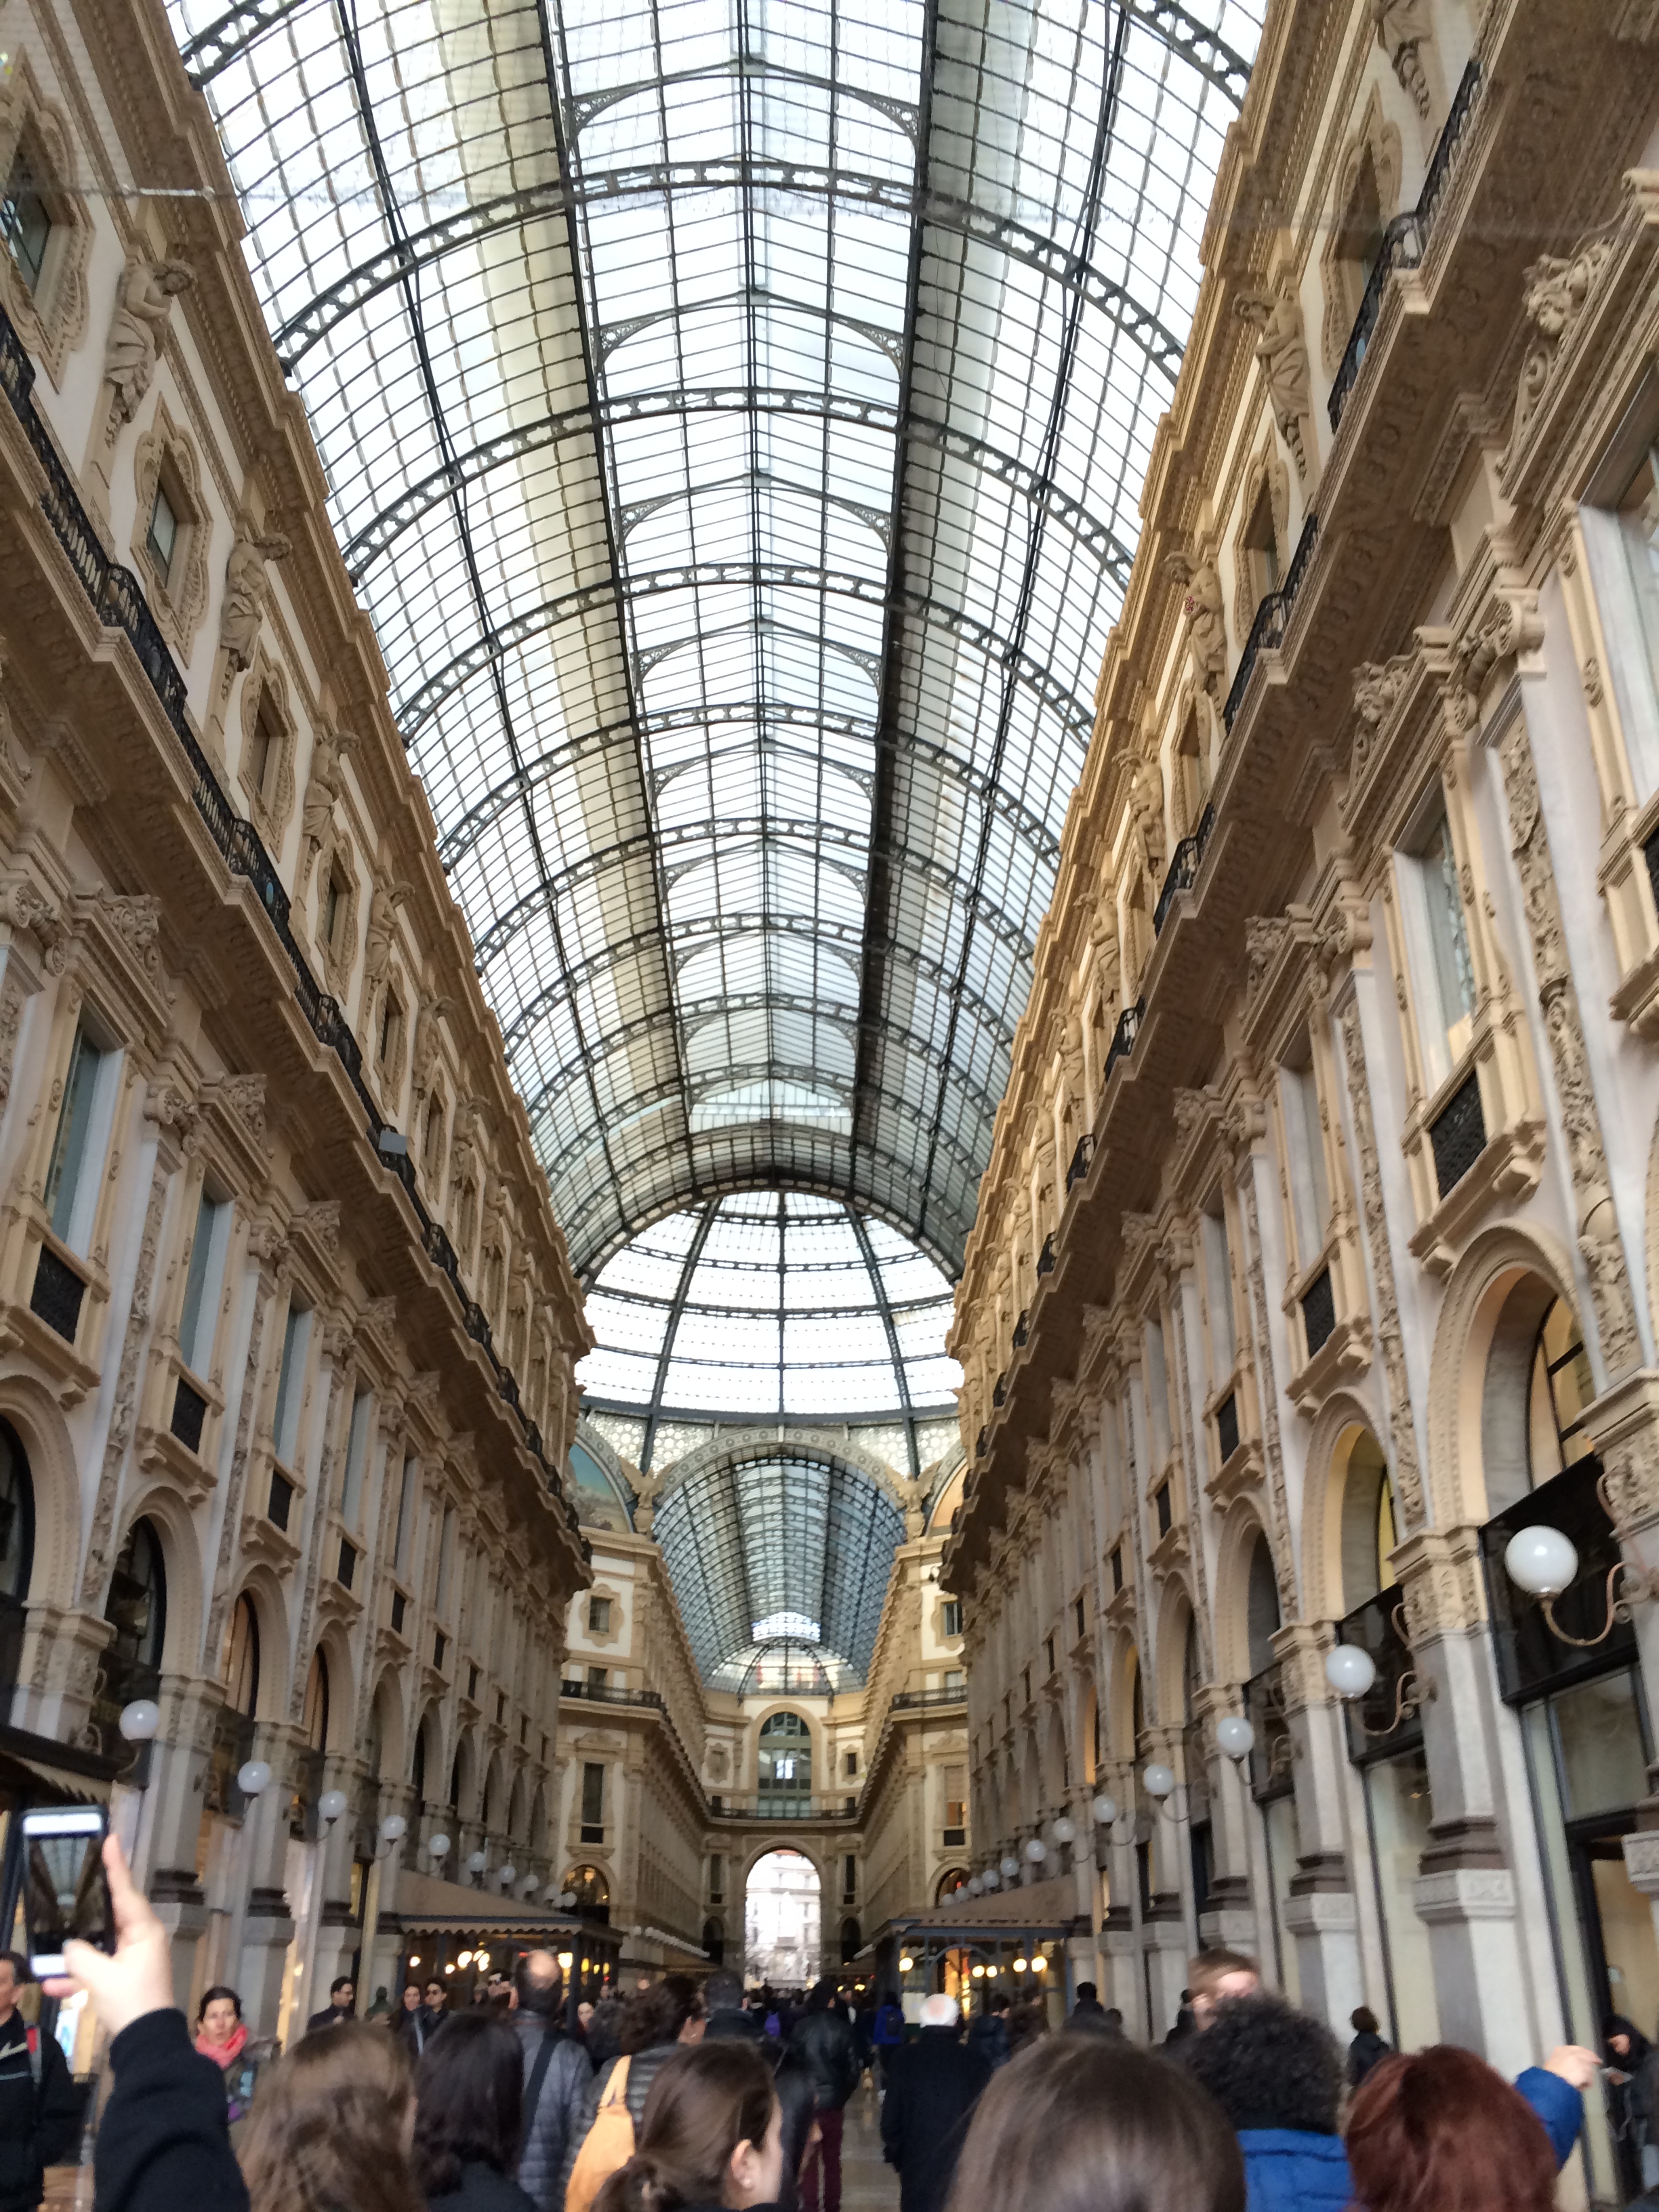 Image of the Galleria Vittorio Emmanuele II